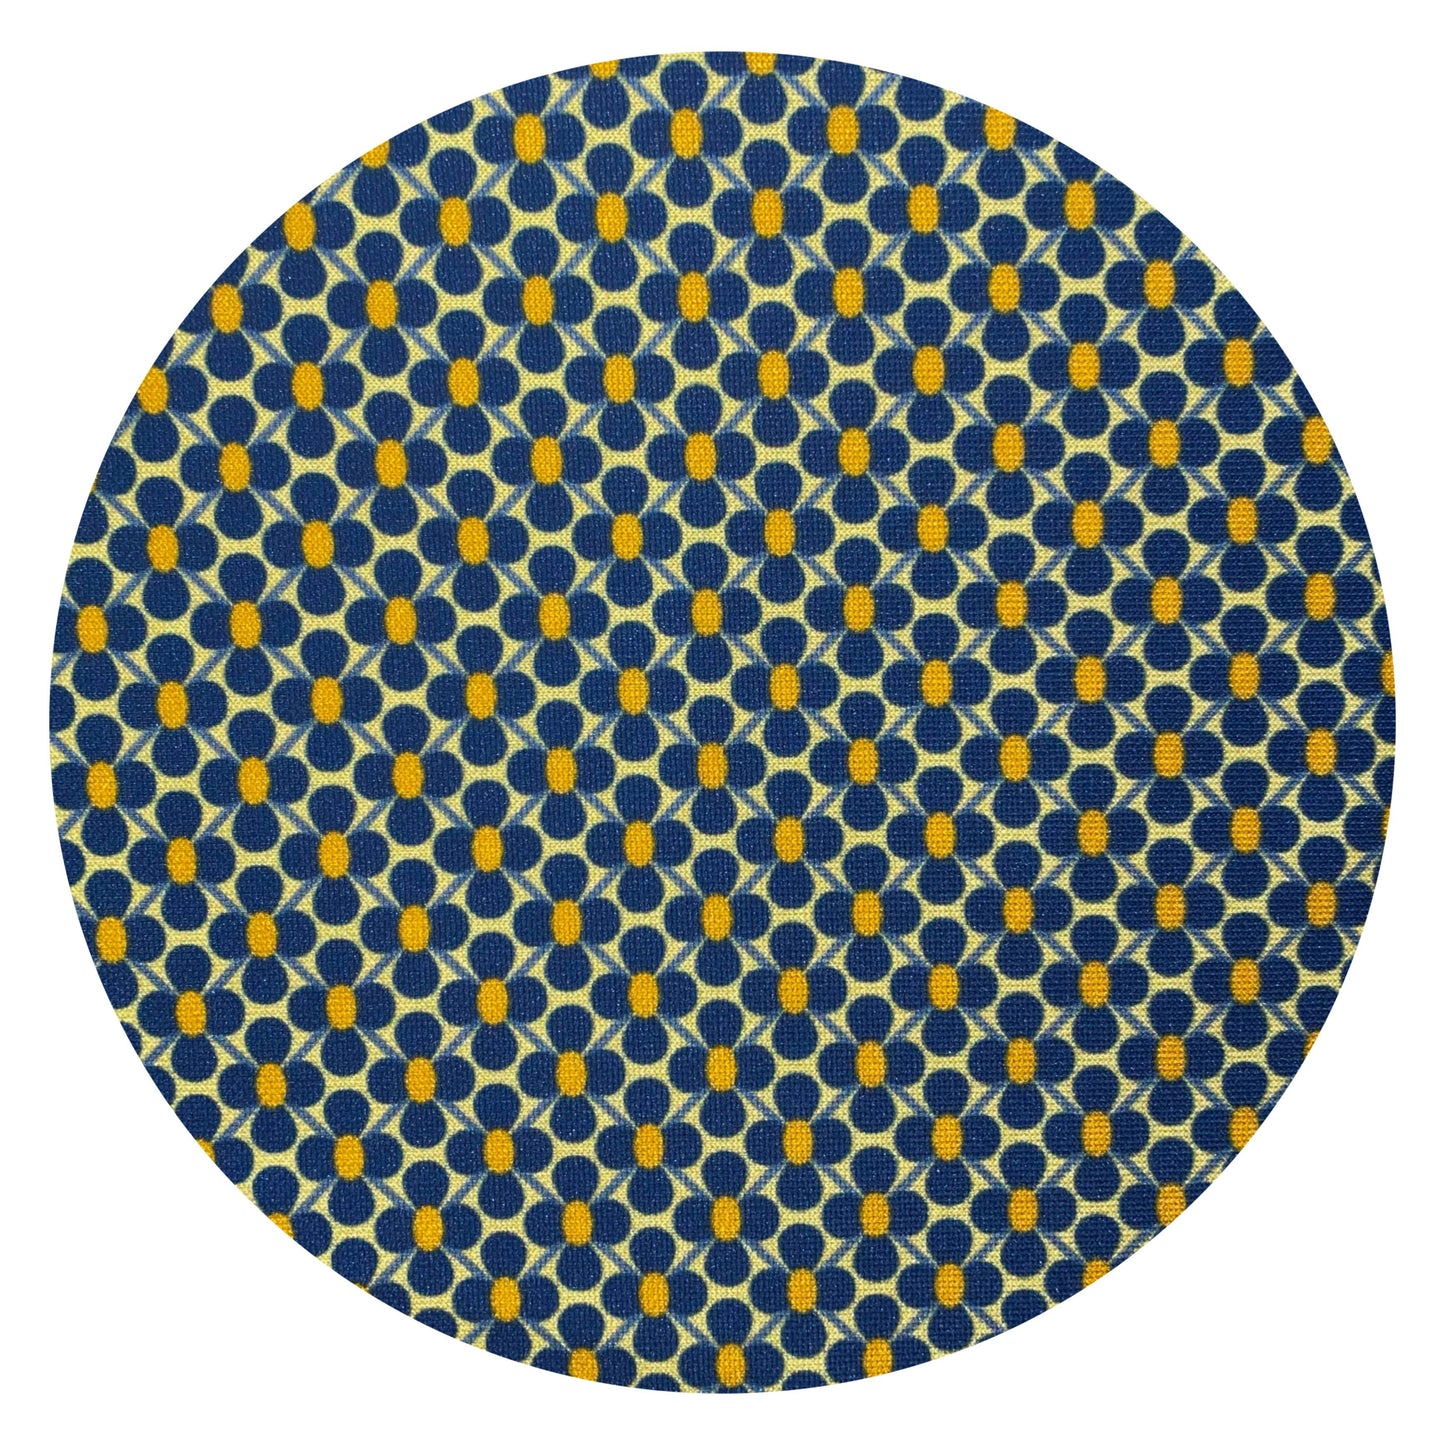 Pantazampa microflower blu giallo